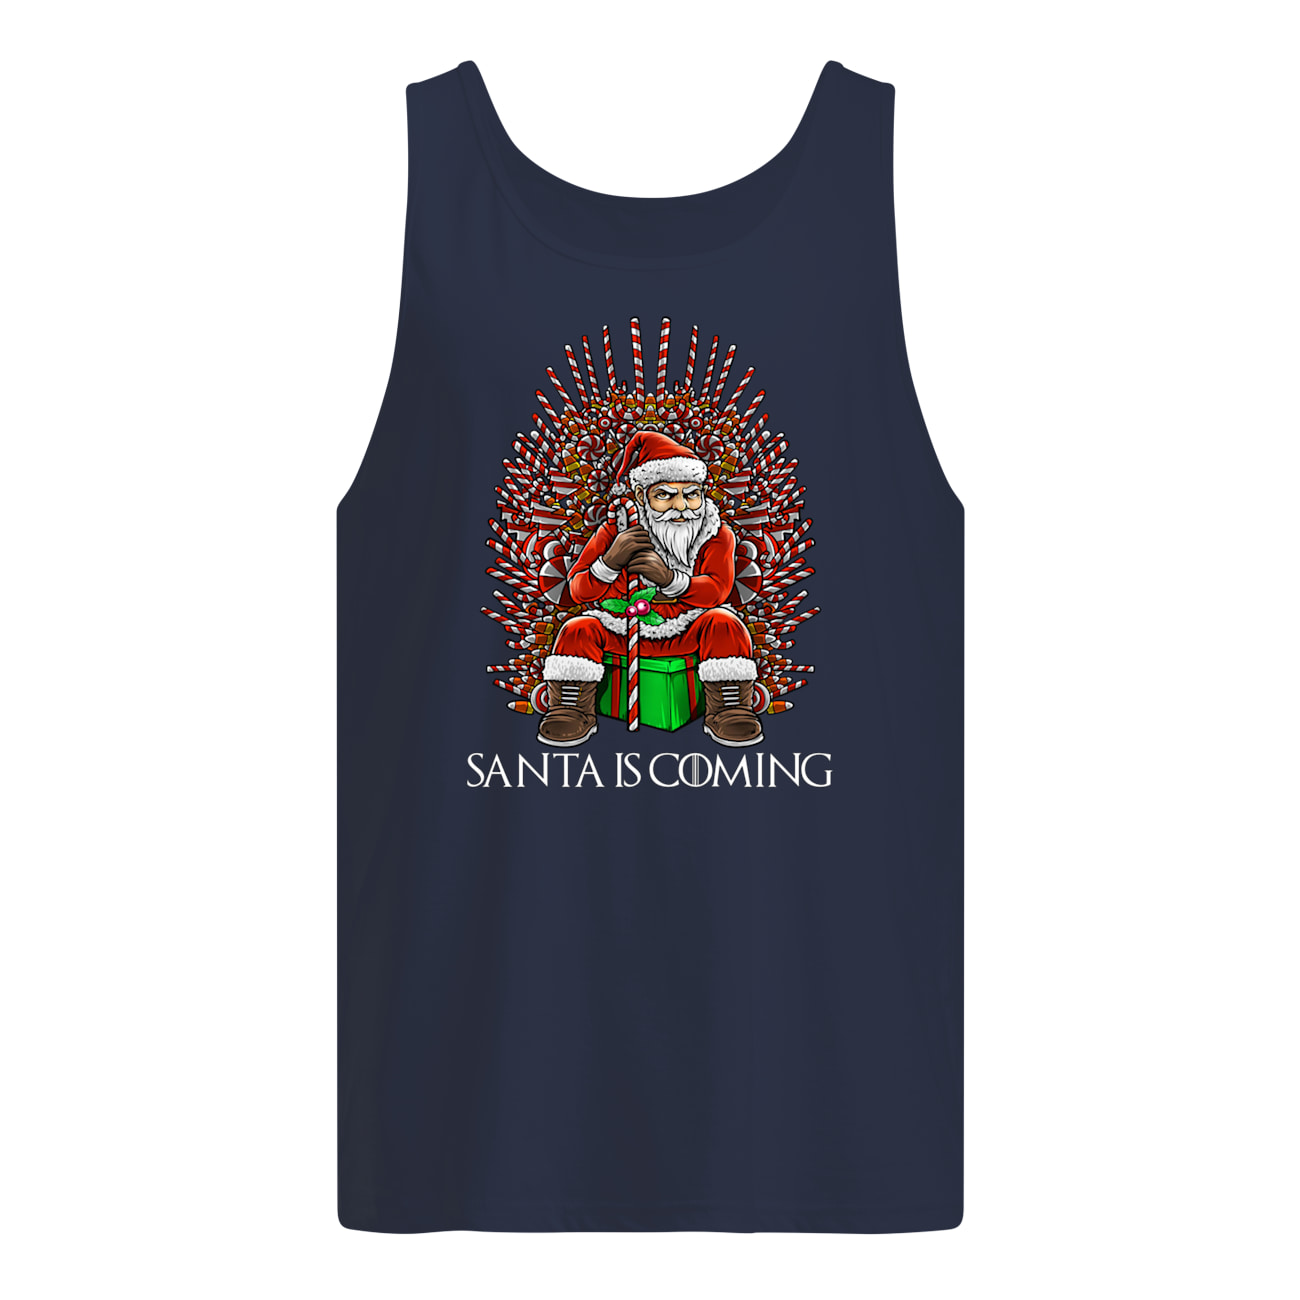 Santa is coming chirstmas tank top